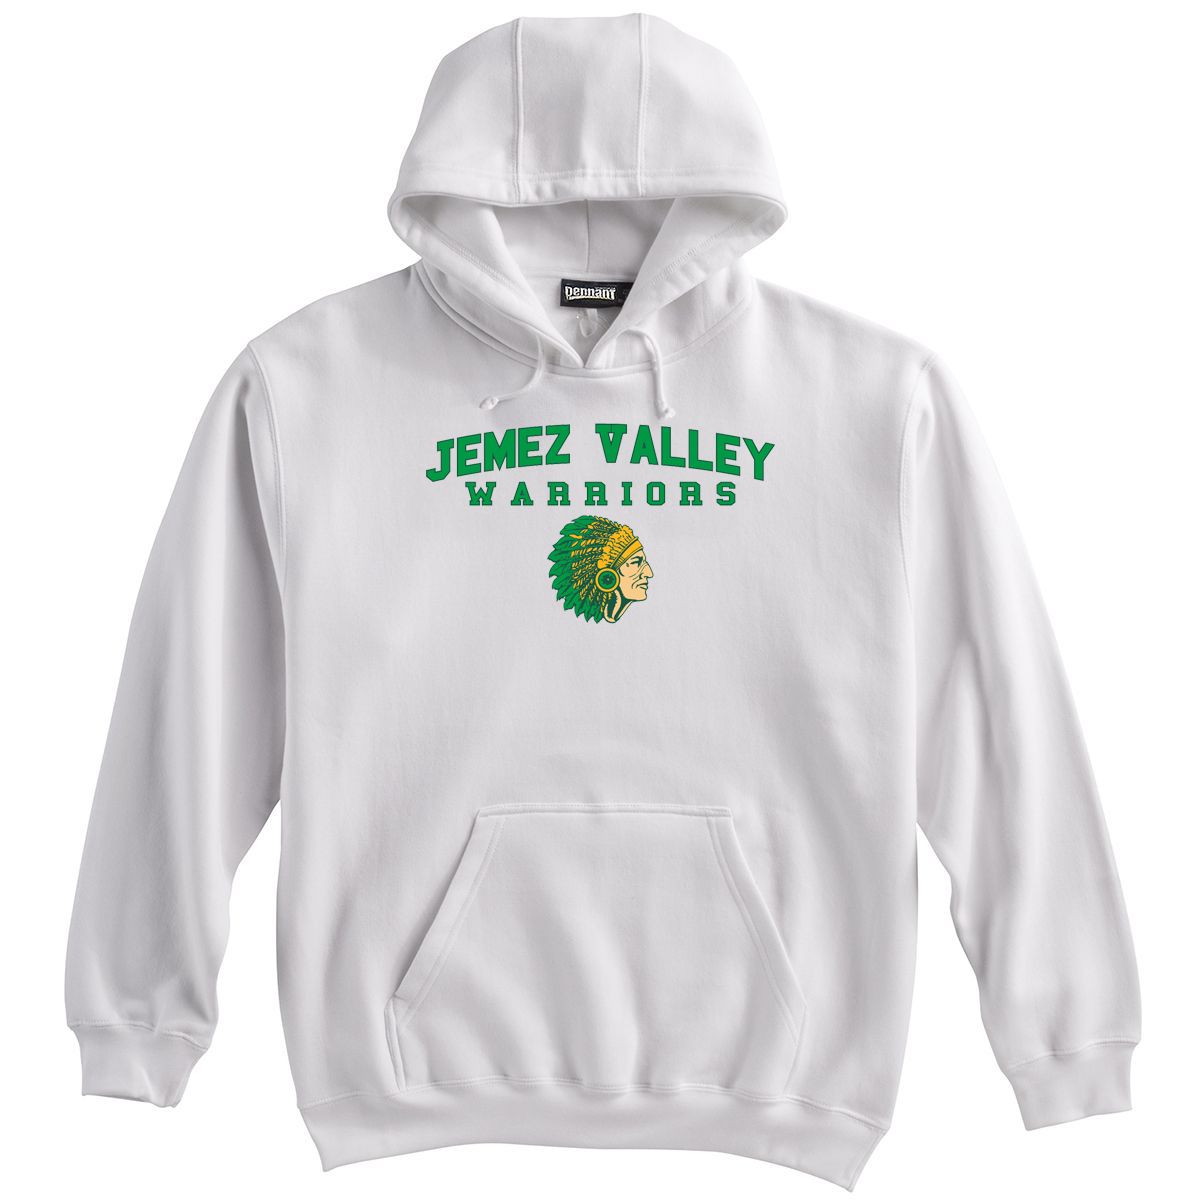 Jemez Valley Warriors Sweatshirt